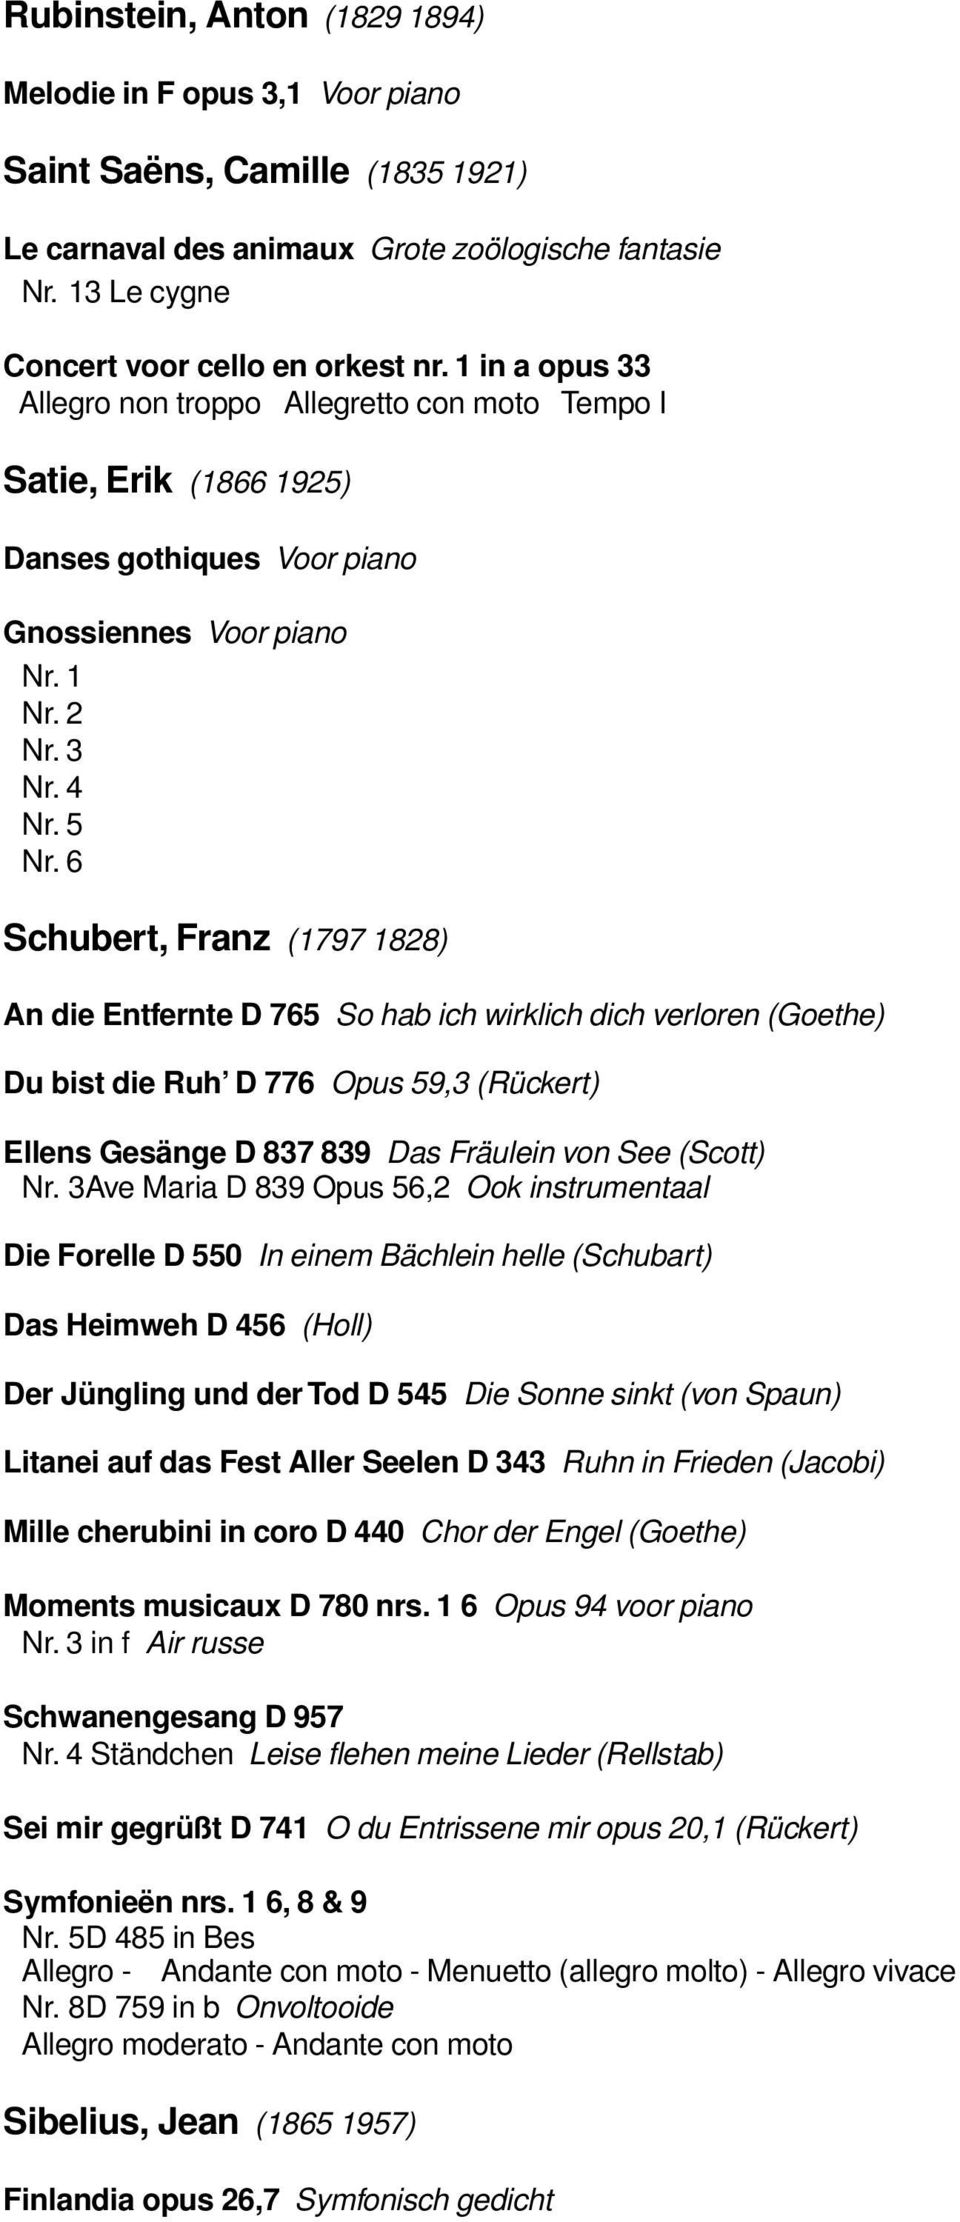 6 Schubert, Franz (1797 1828) An die Entfernte D 765 So hab ich wirklich dich verloren (Goethe) Du bist die Ruh D 776 Opus 59,3 (Rückert) Ellens Gesänge D 837 839 Das Fräulein von See (Scott) Nr.